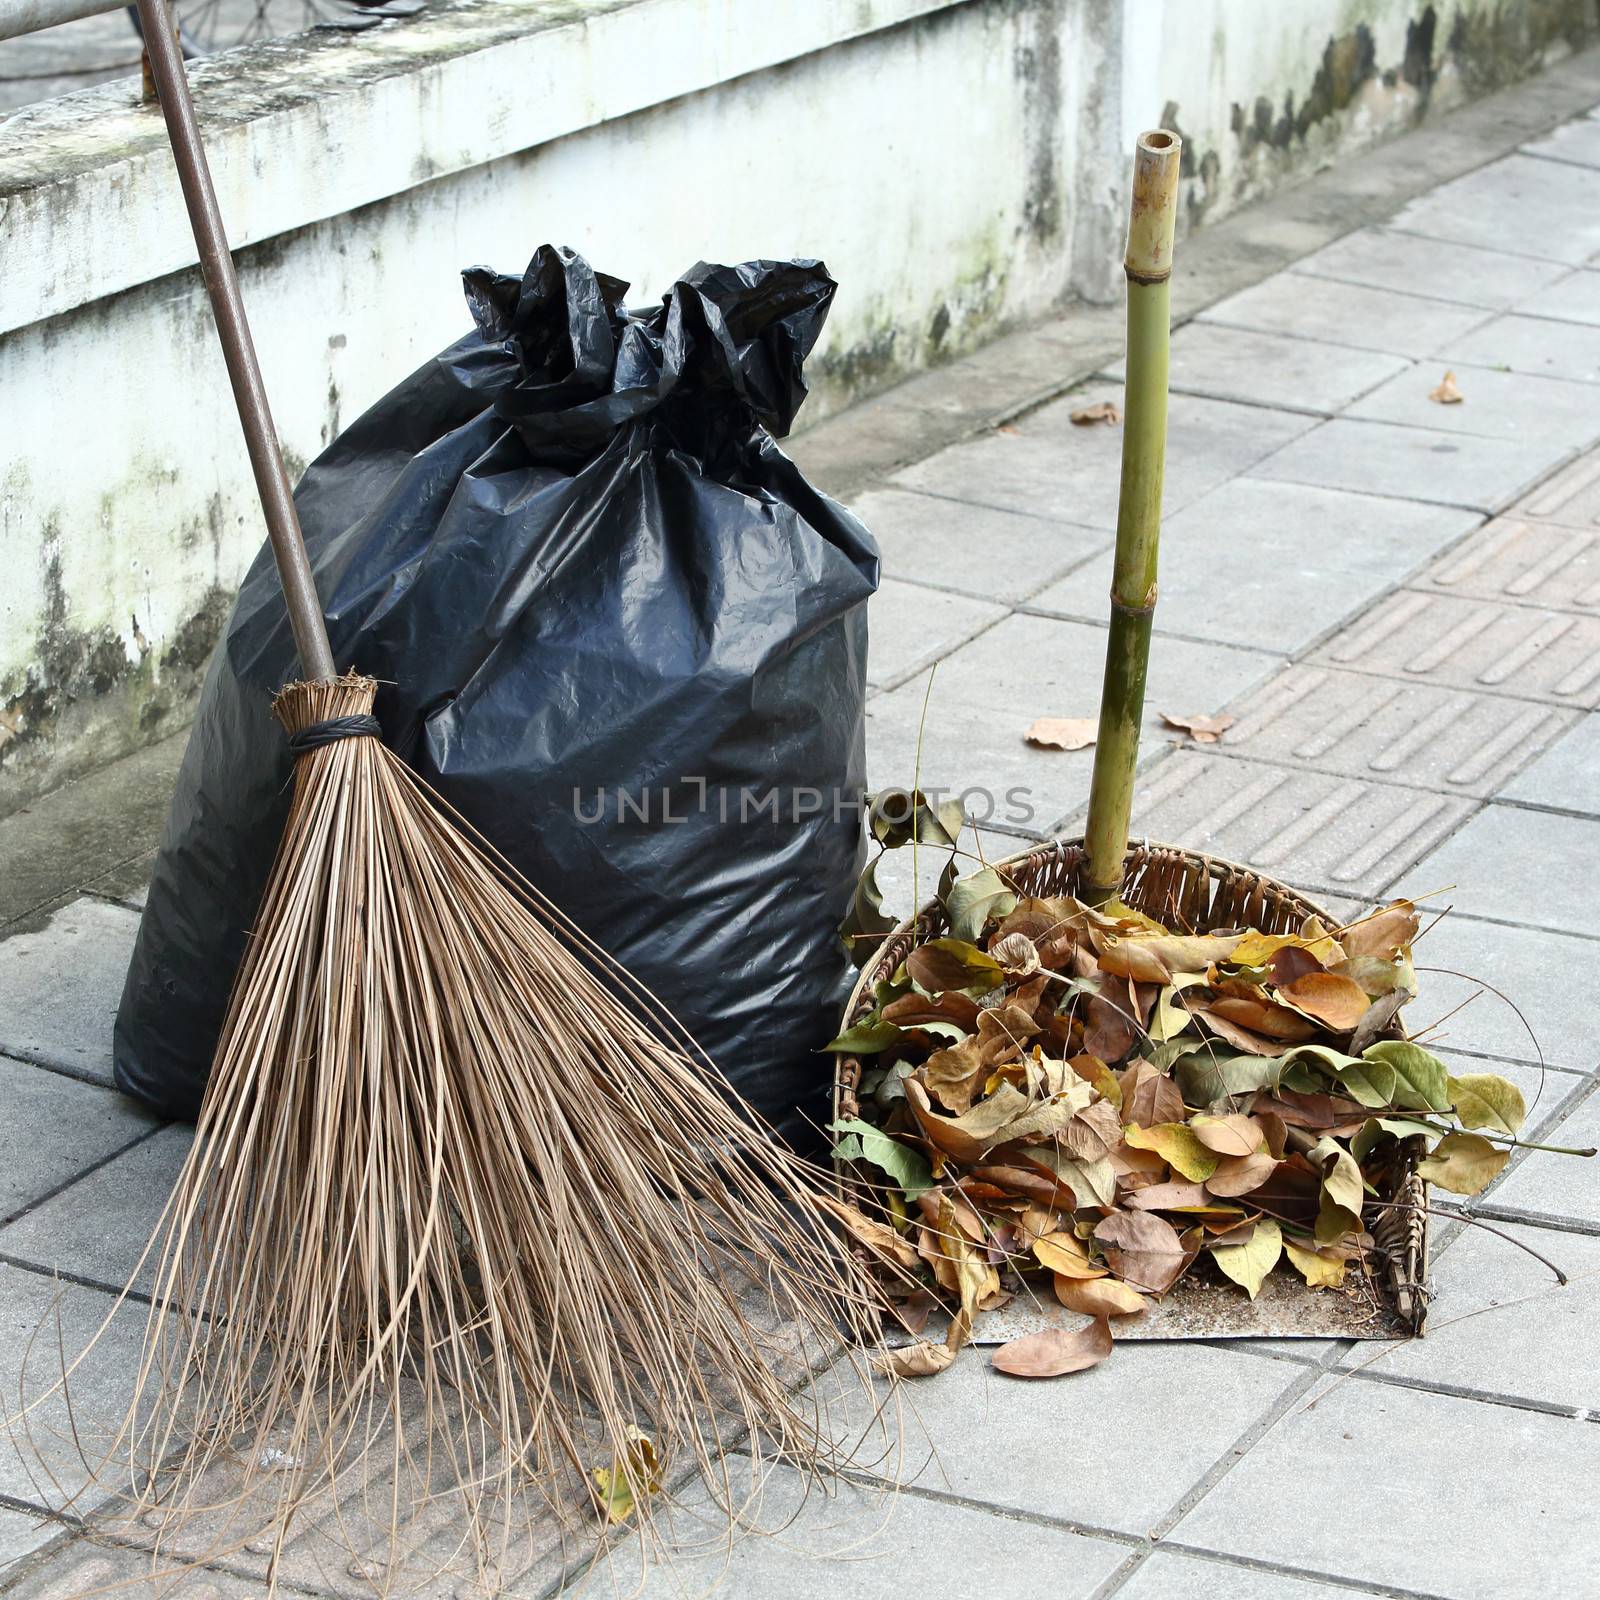 Dry leaves, broom, waste scoop and Garbage bags on footpath